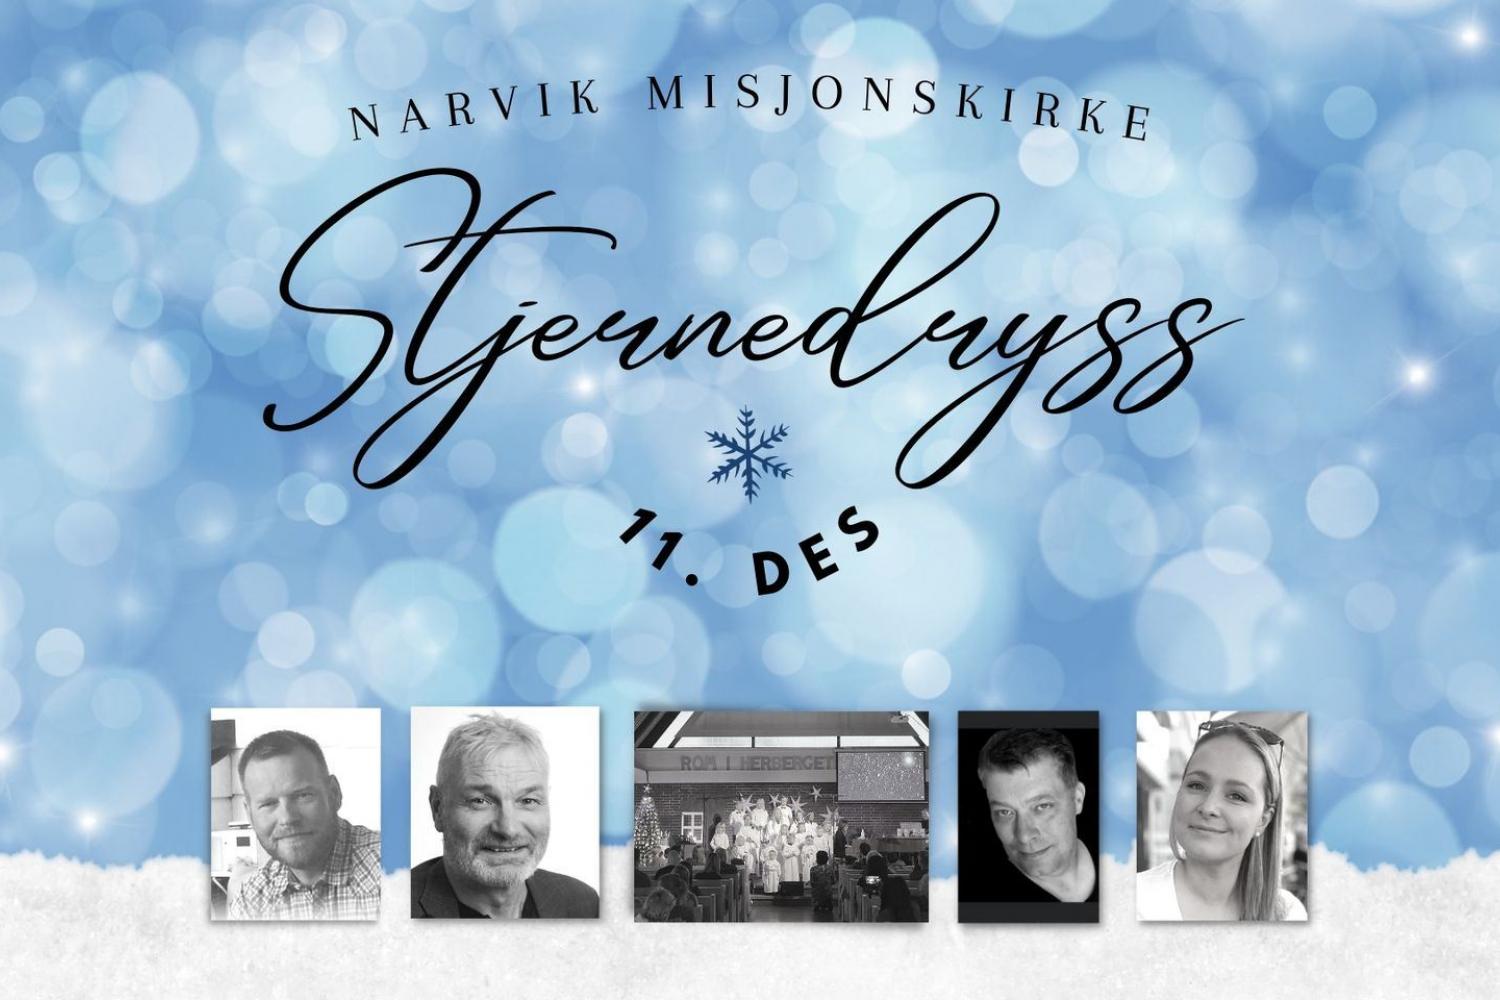 Stjernedryss i Narvik Misjonskirke